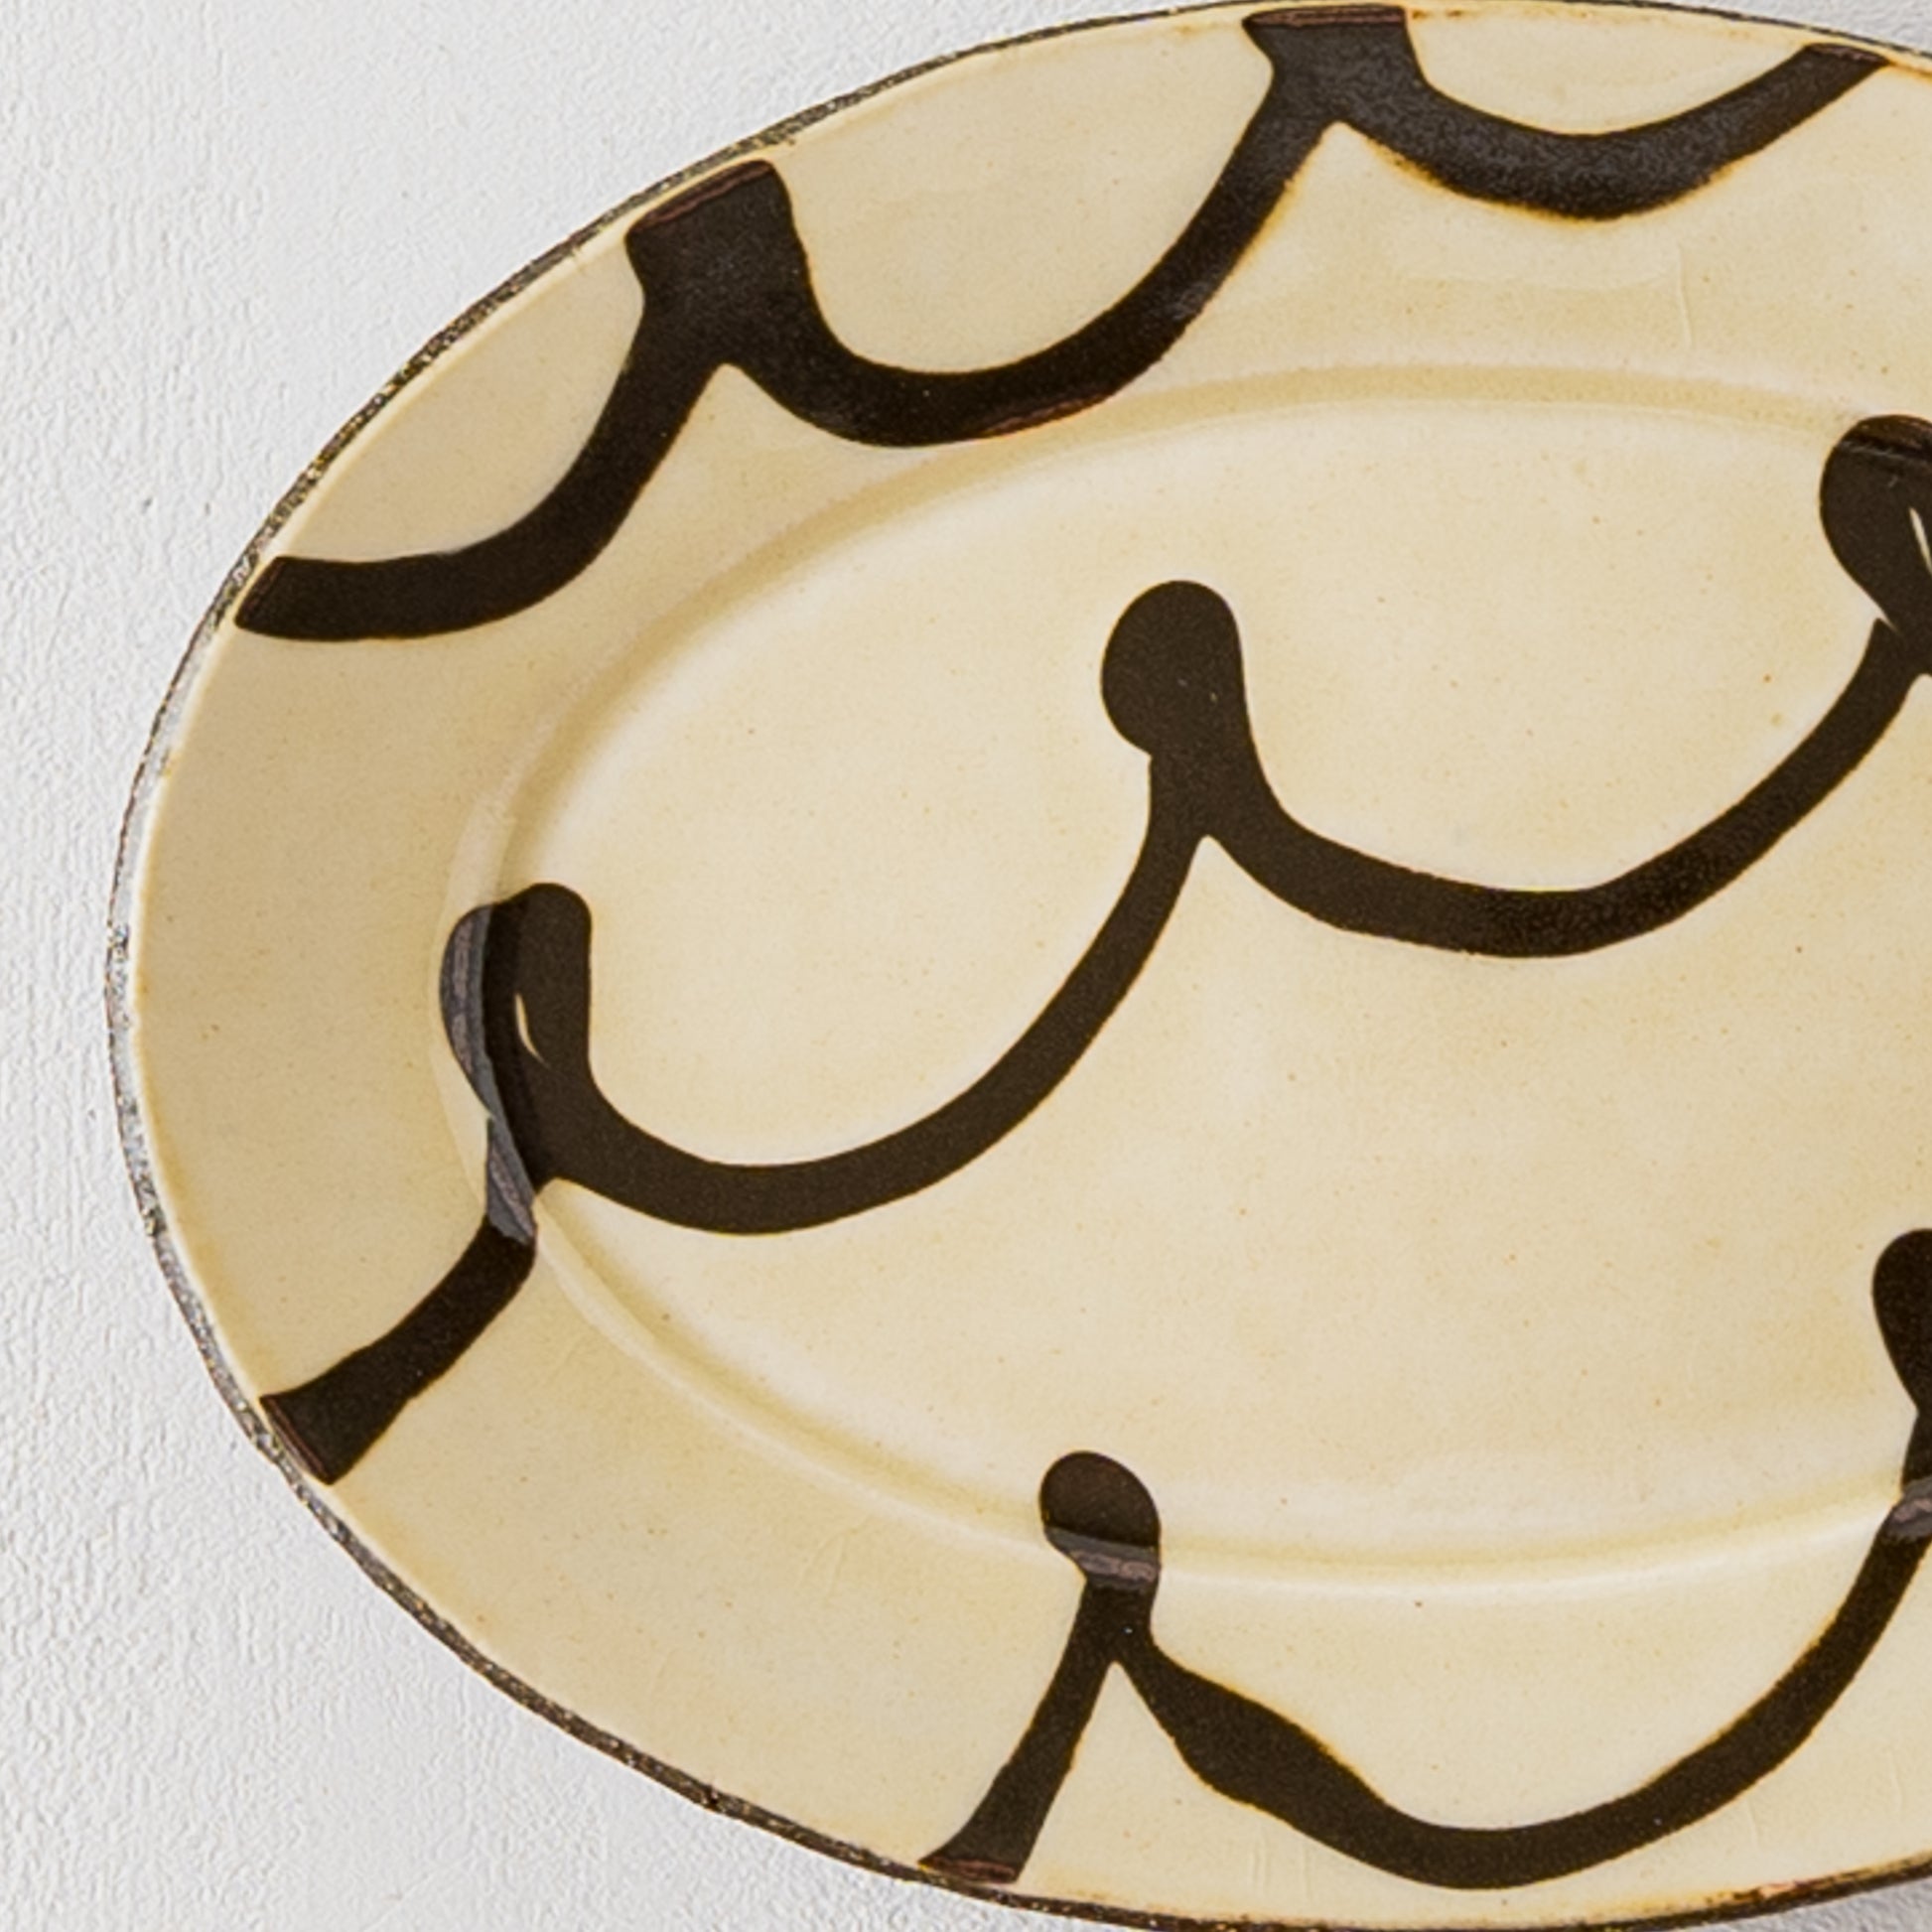 紀窯中川紀夫さんのスリップウェアくるくる模様楕円リム皿